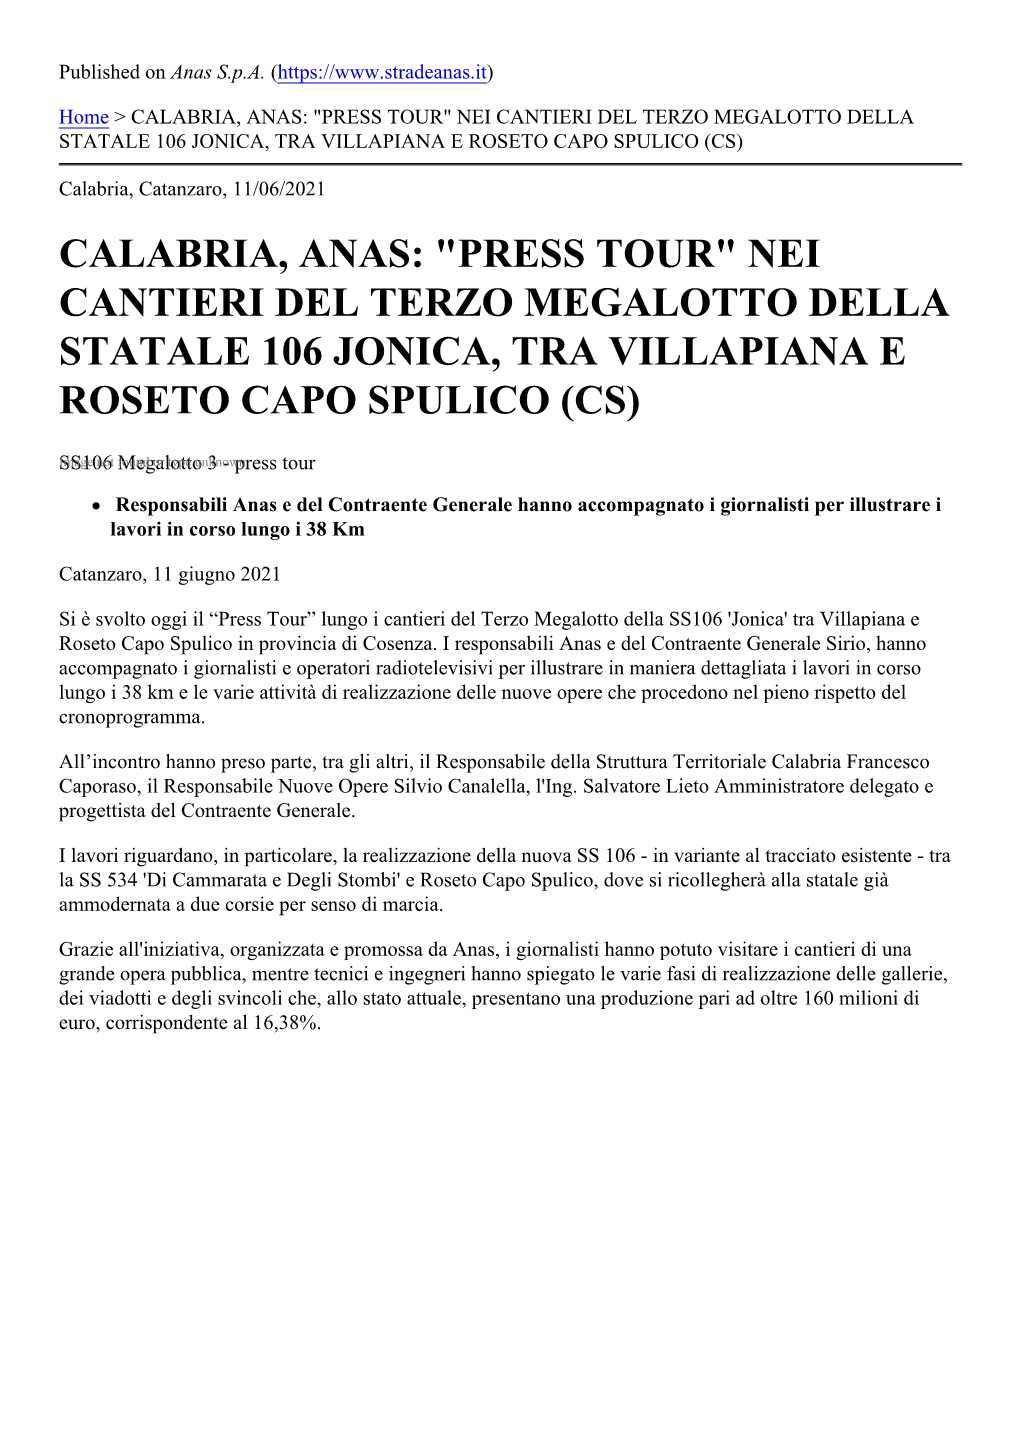 Calabria, Anas: "Press Tour" Nei Cantieri Del Terzo Megalotto Della Statale 106 Jonica, Tra Villapiana E Roseto Capo Spulico (Cs)